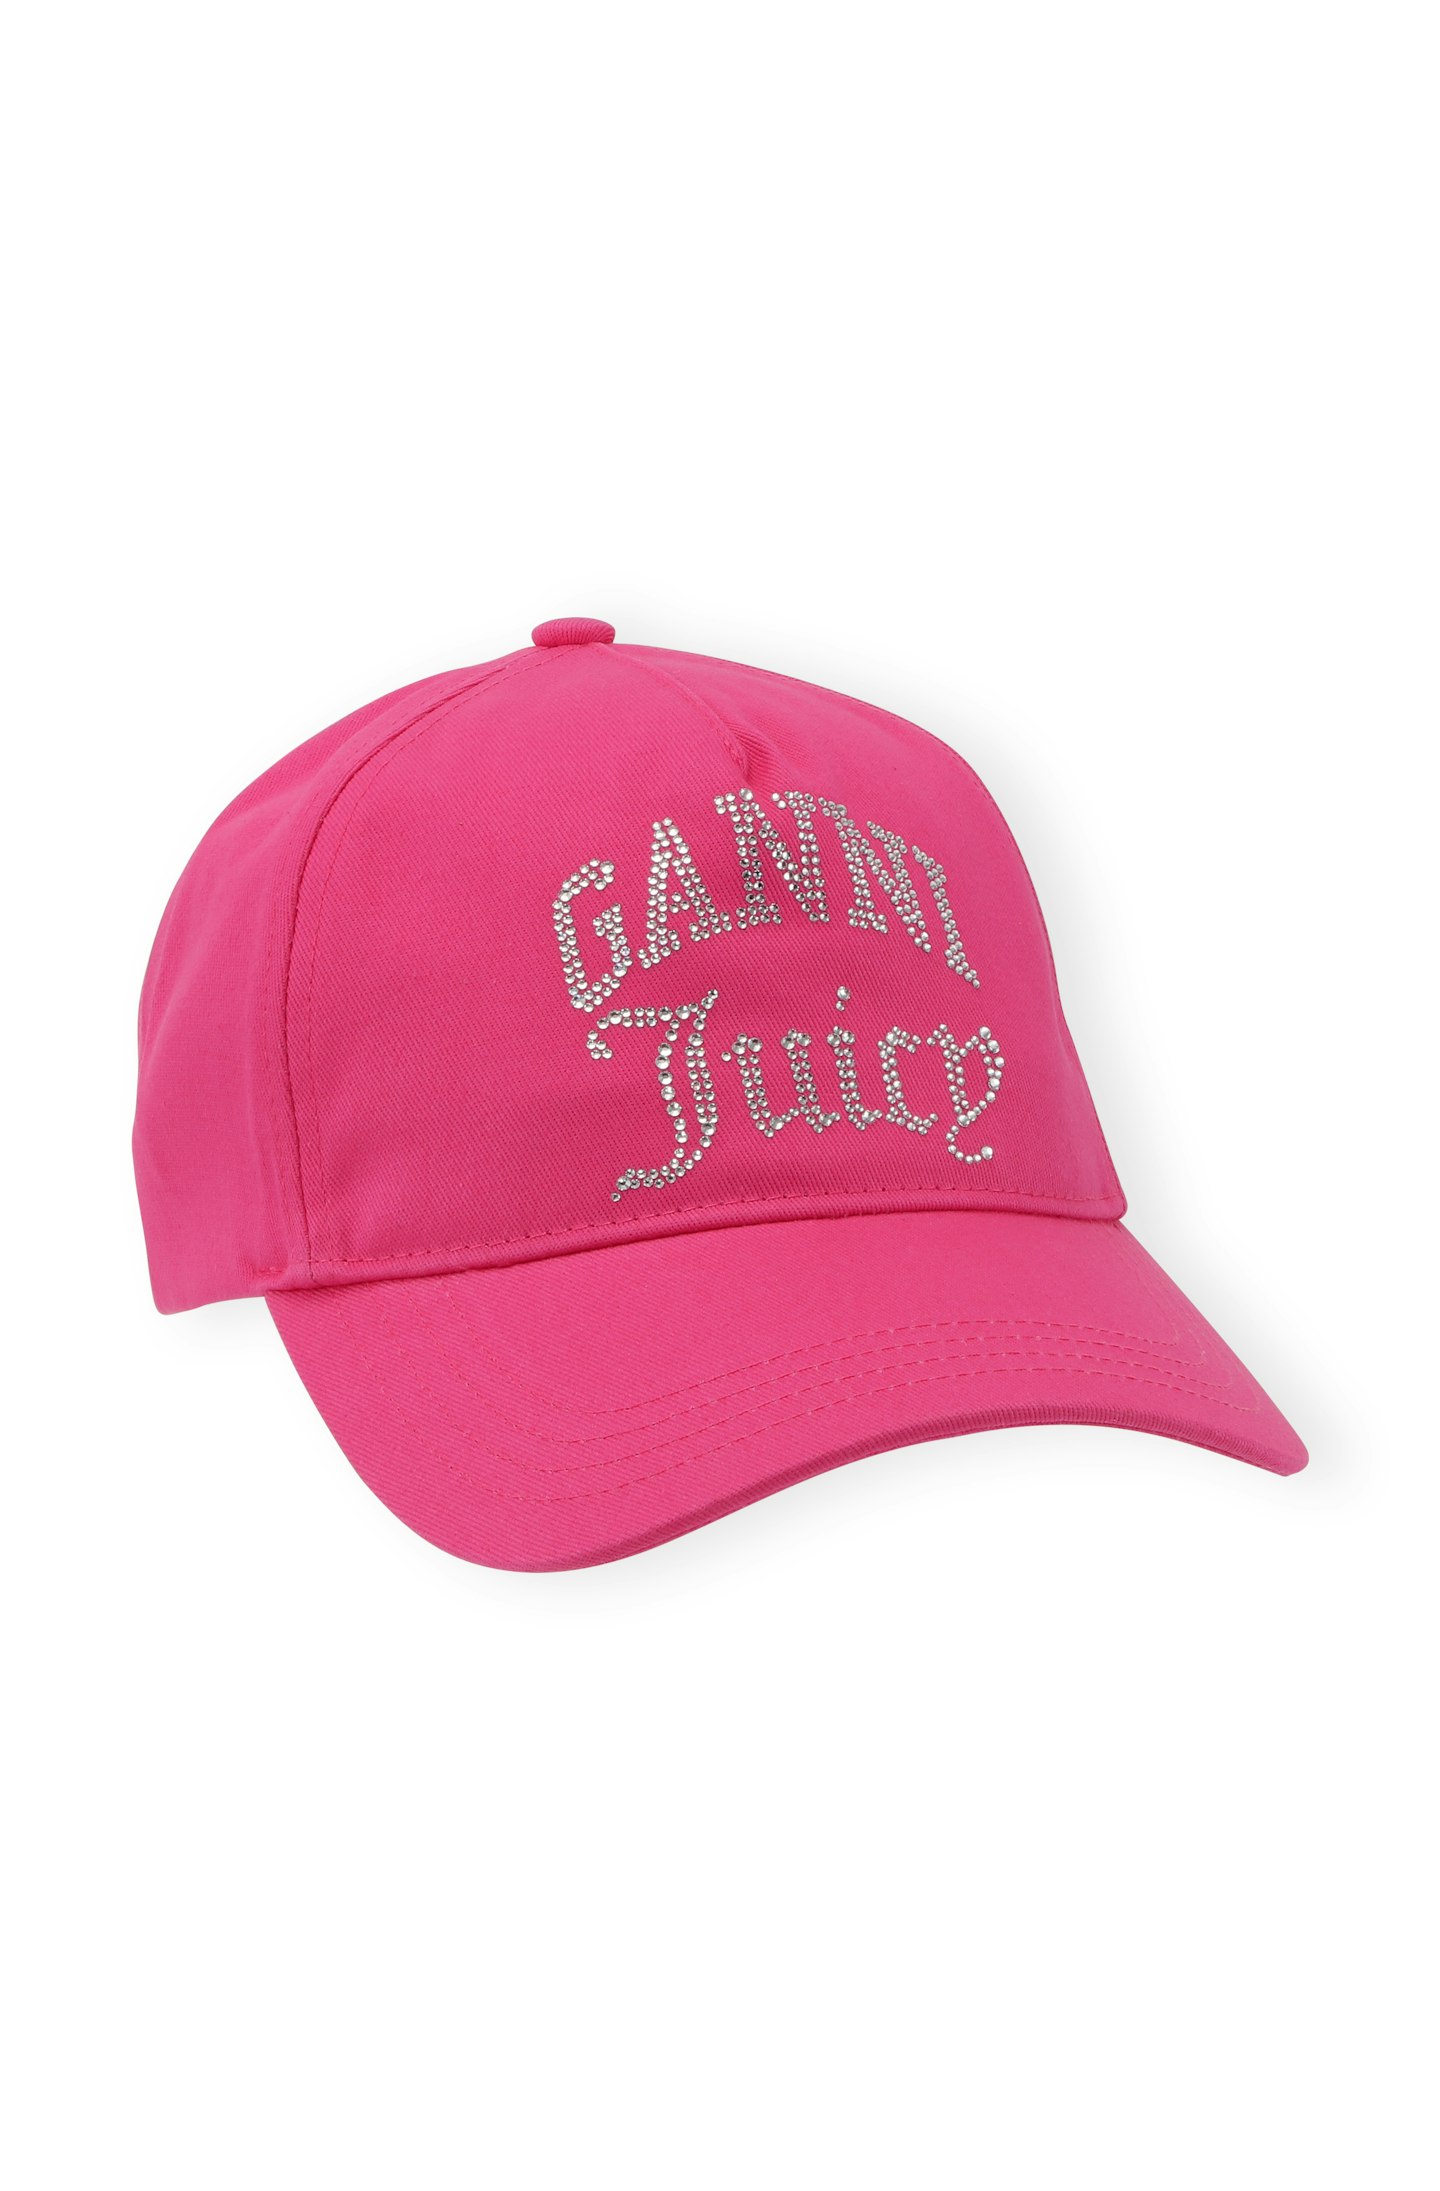 GANNI x Juicy Couture  Heavy Cotton Cap, £95